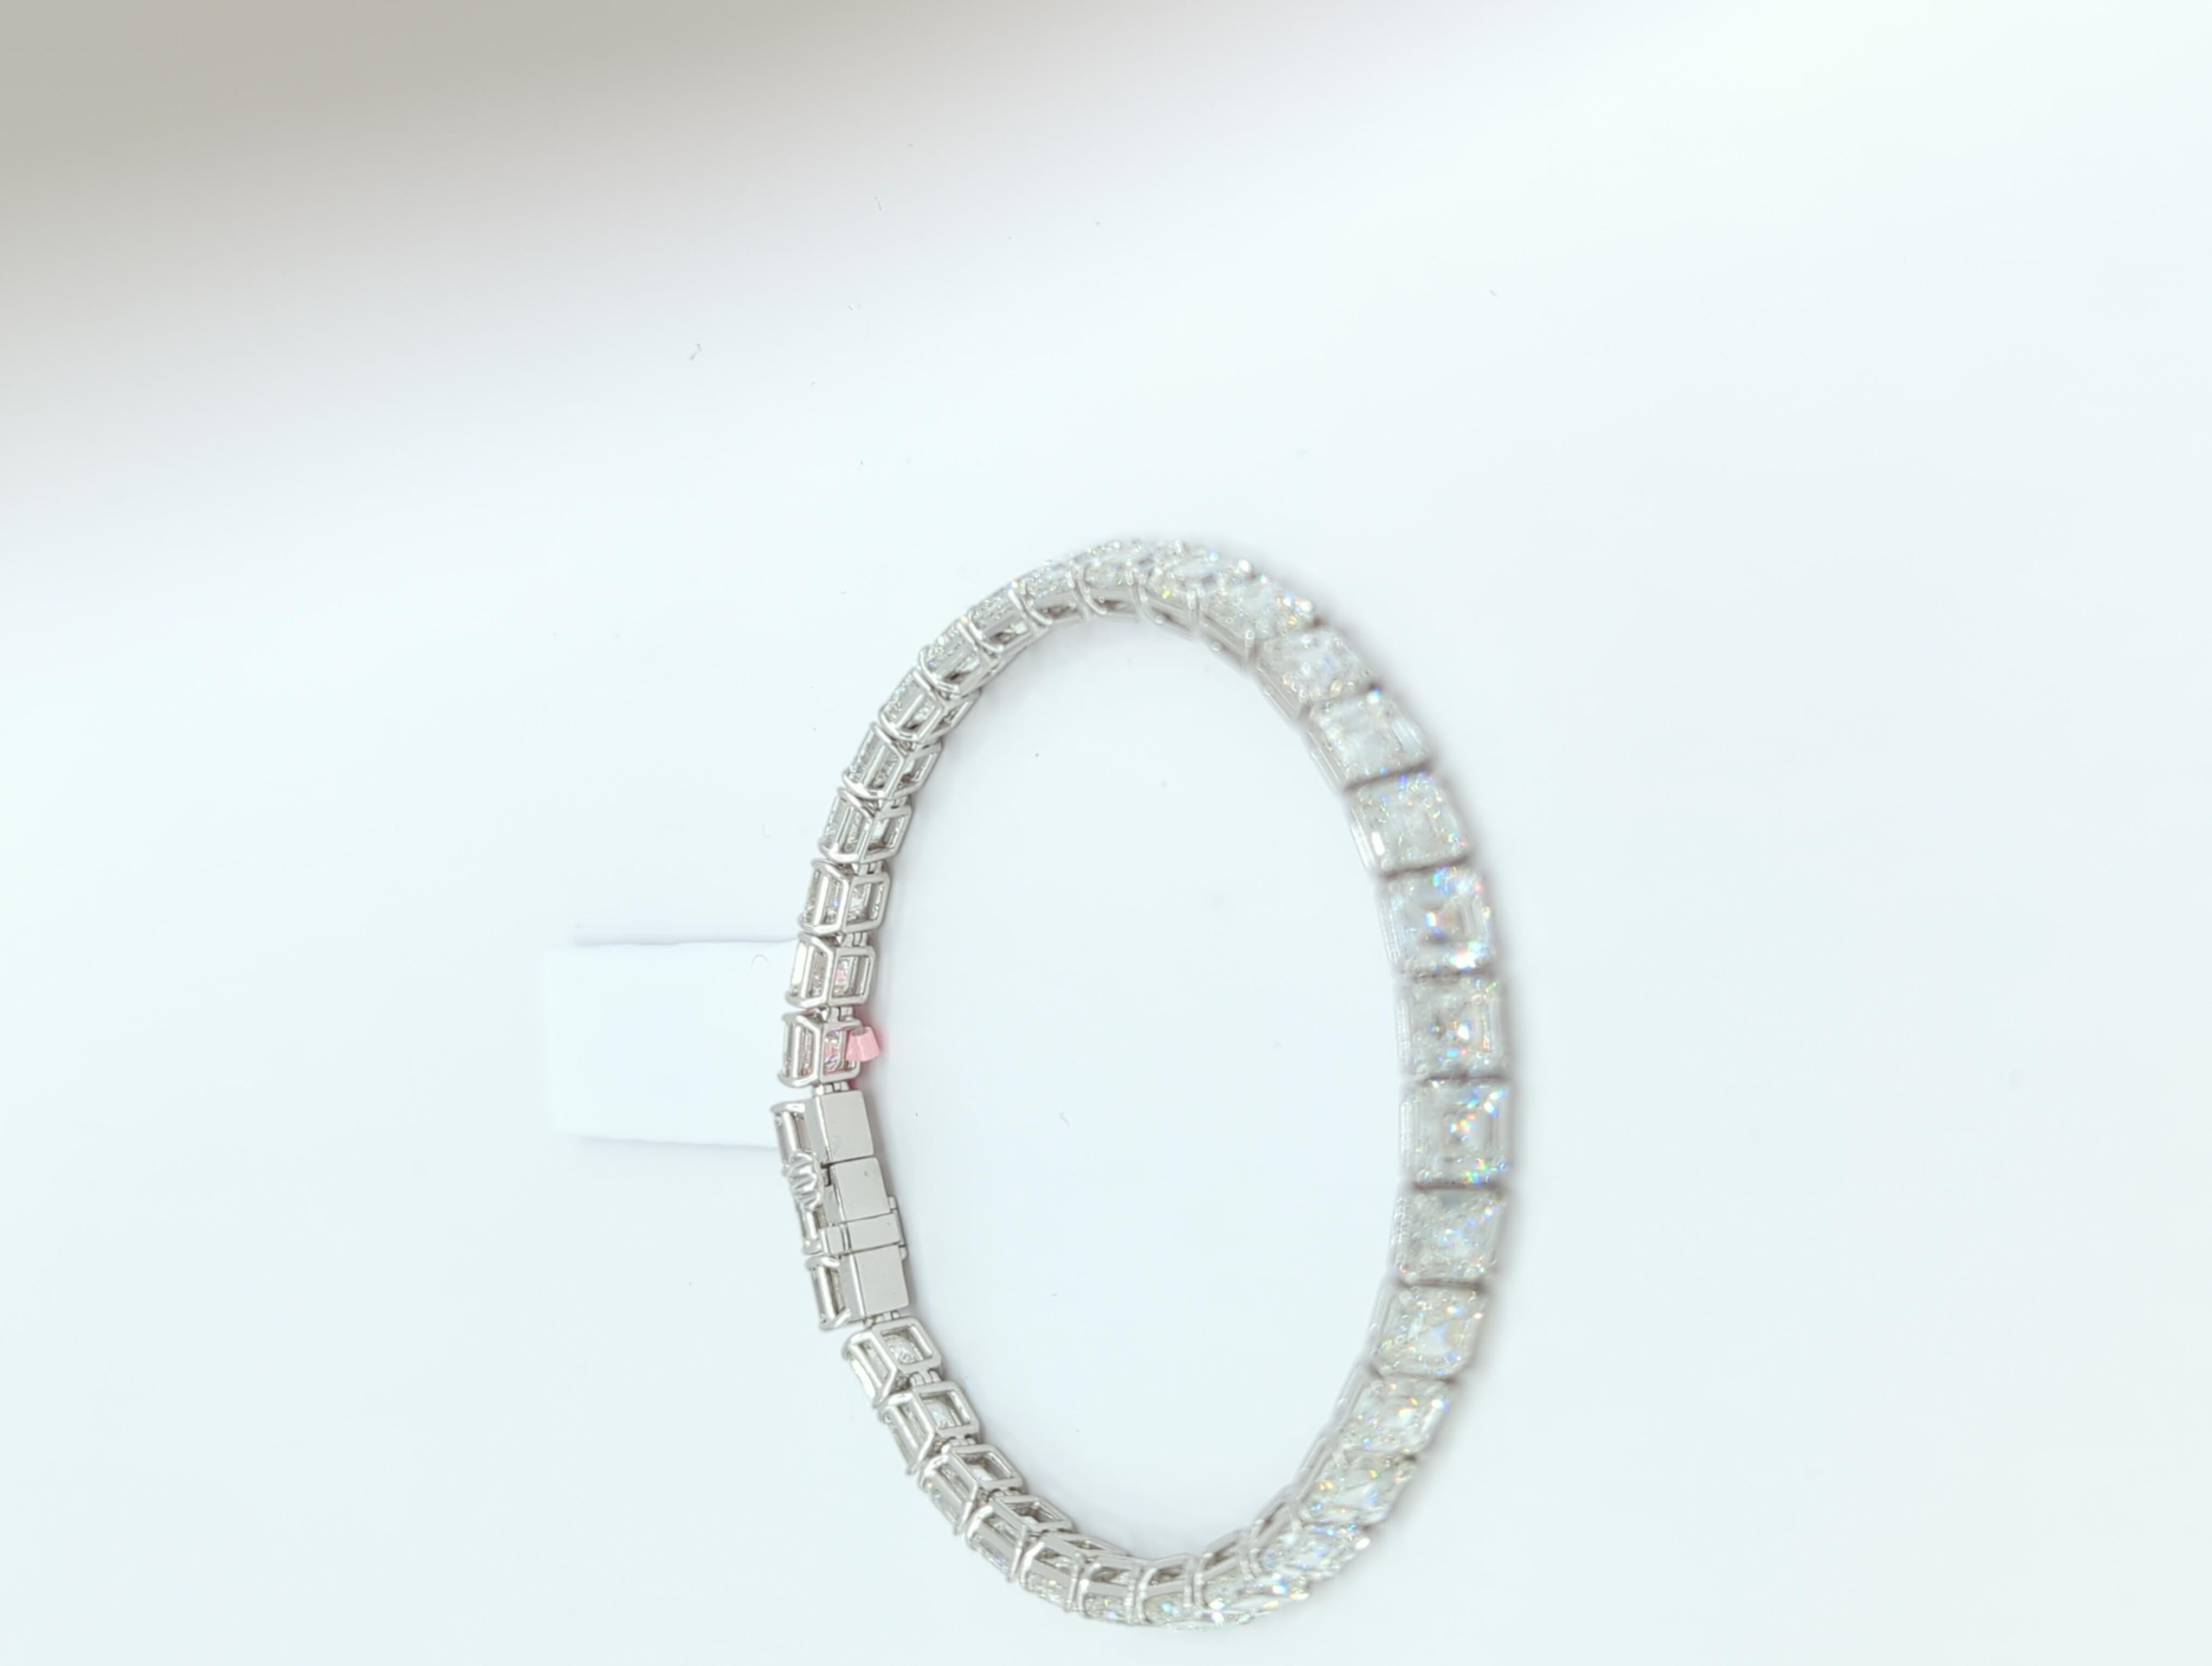 Bracelet tennis en or blanc 18 carats avec diamants blancs taille Asscher de 34,06 carats, certifiés GIA 4